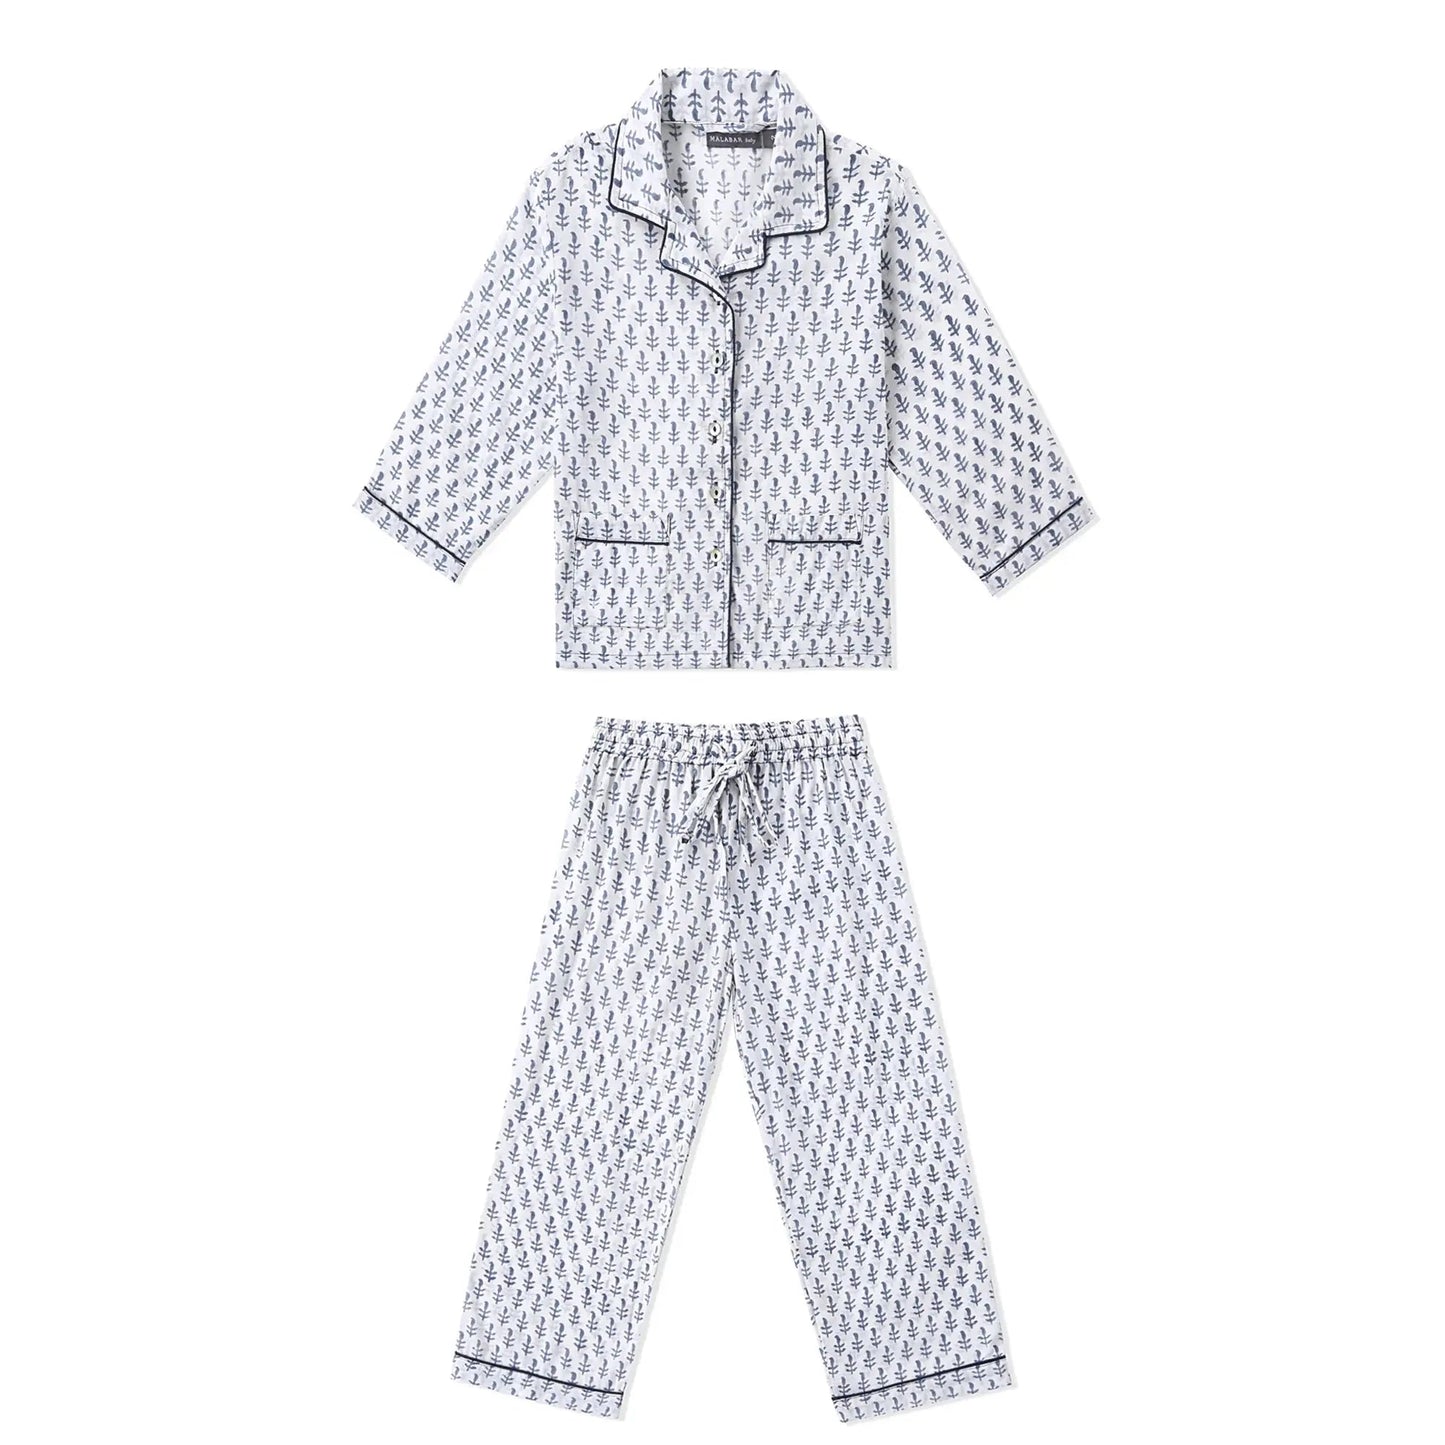 Matching PJ Sets - Daddy & Me | Mens & Kids Loungewear